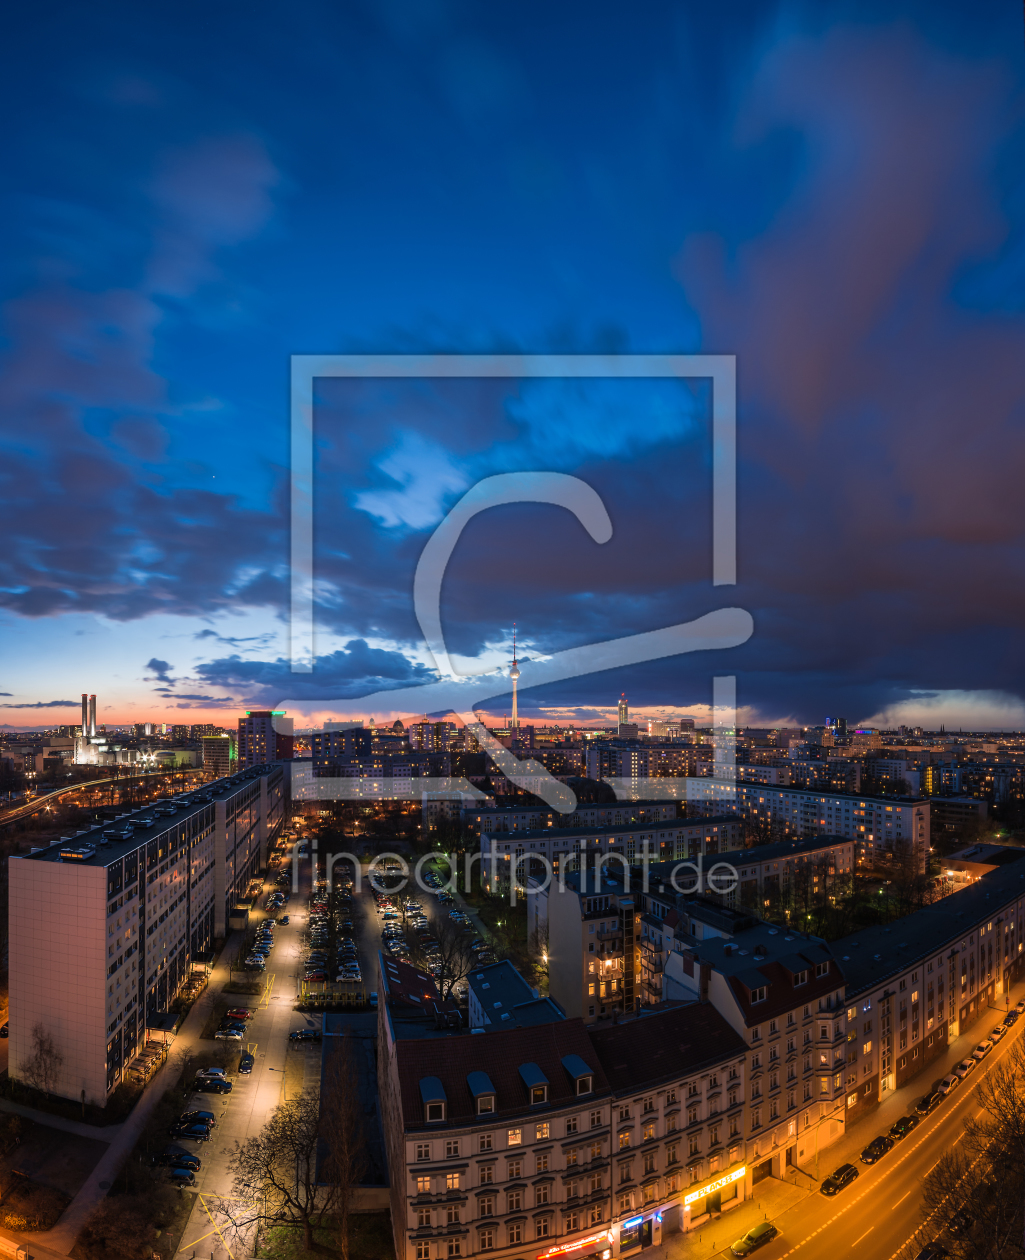 Bild-Nr.: 11476591 Berlin - Skyline Vertorama zur blauen Stunde erstellt von Jean Claude Castor